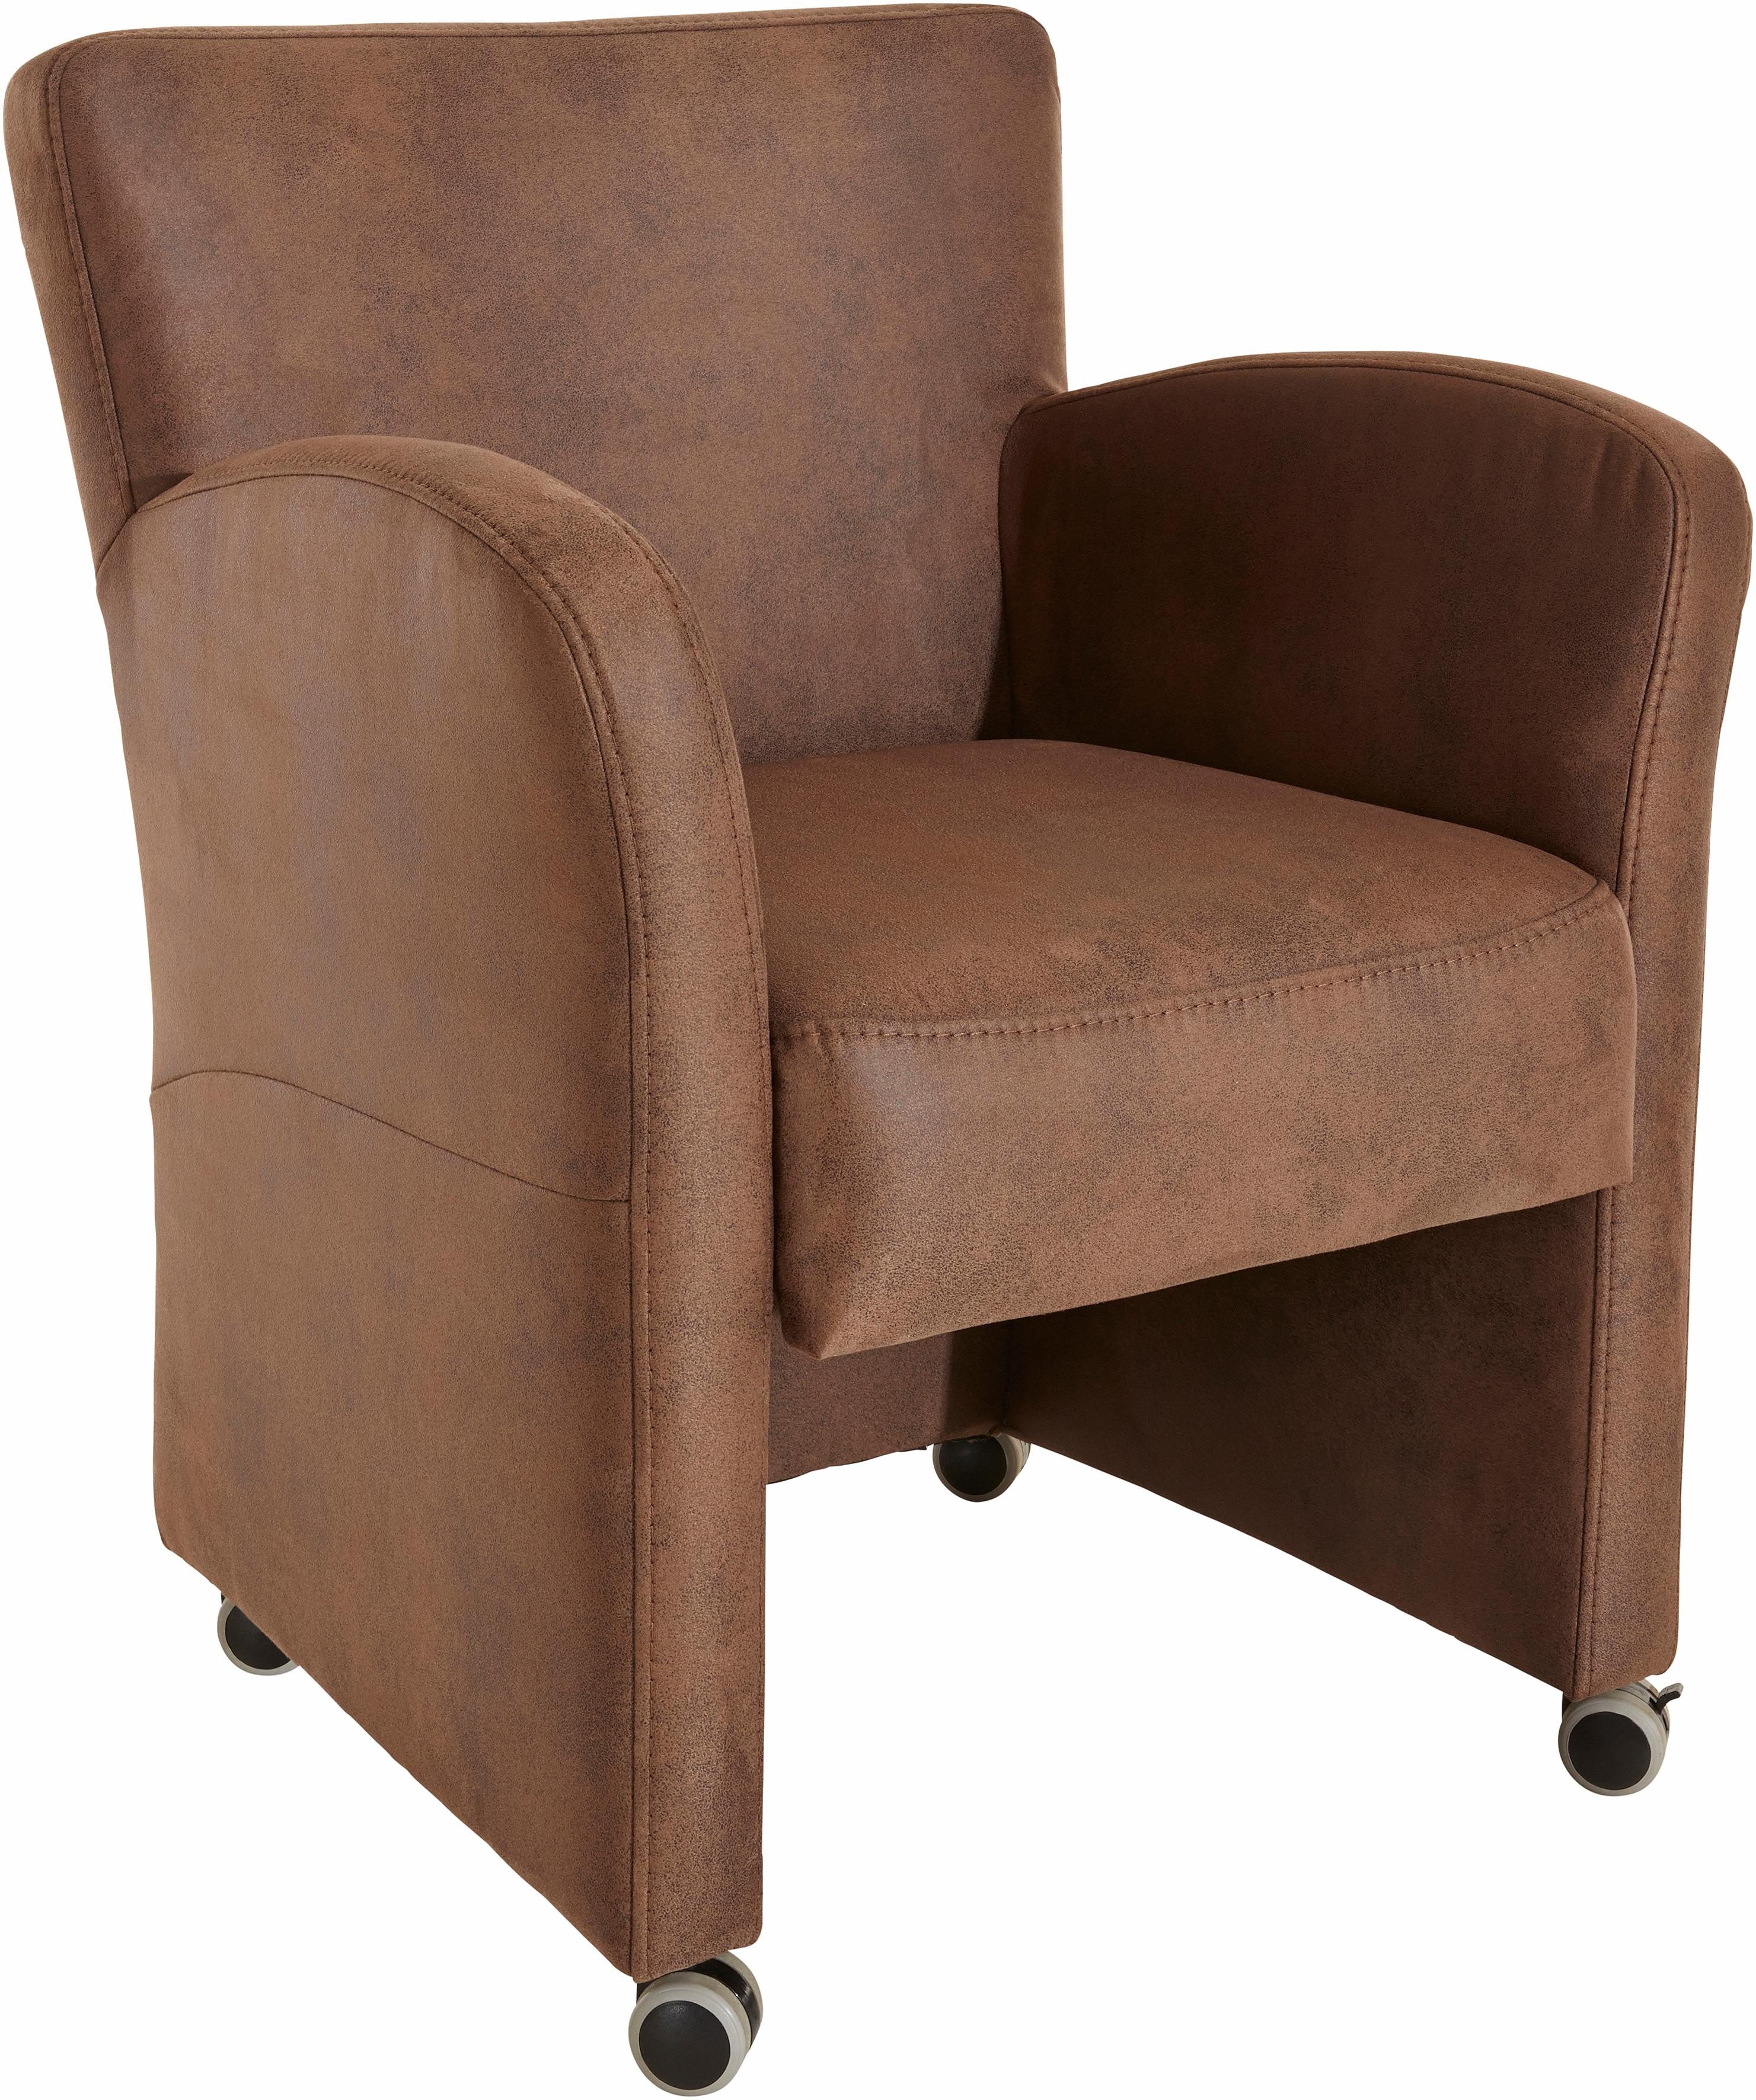 exxpo - sofa fashion fauteuil cortado breedte 66 cm bruin